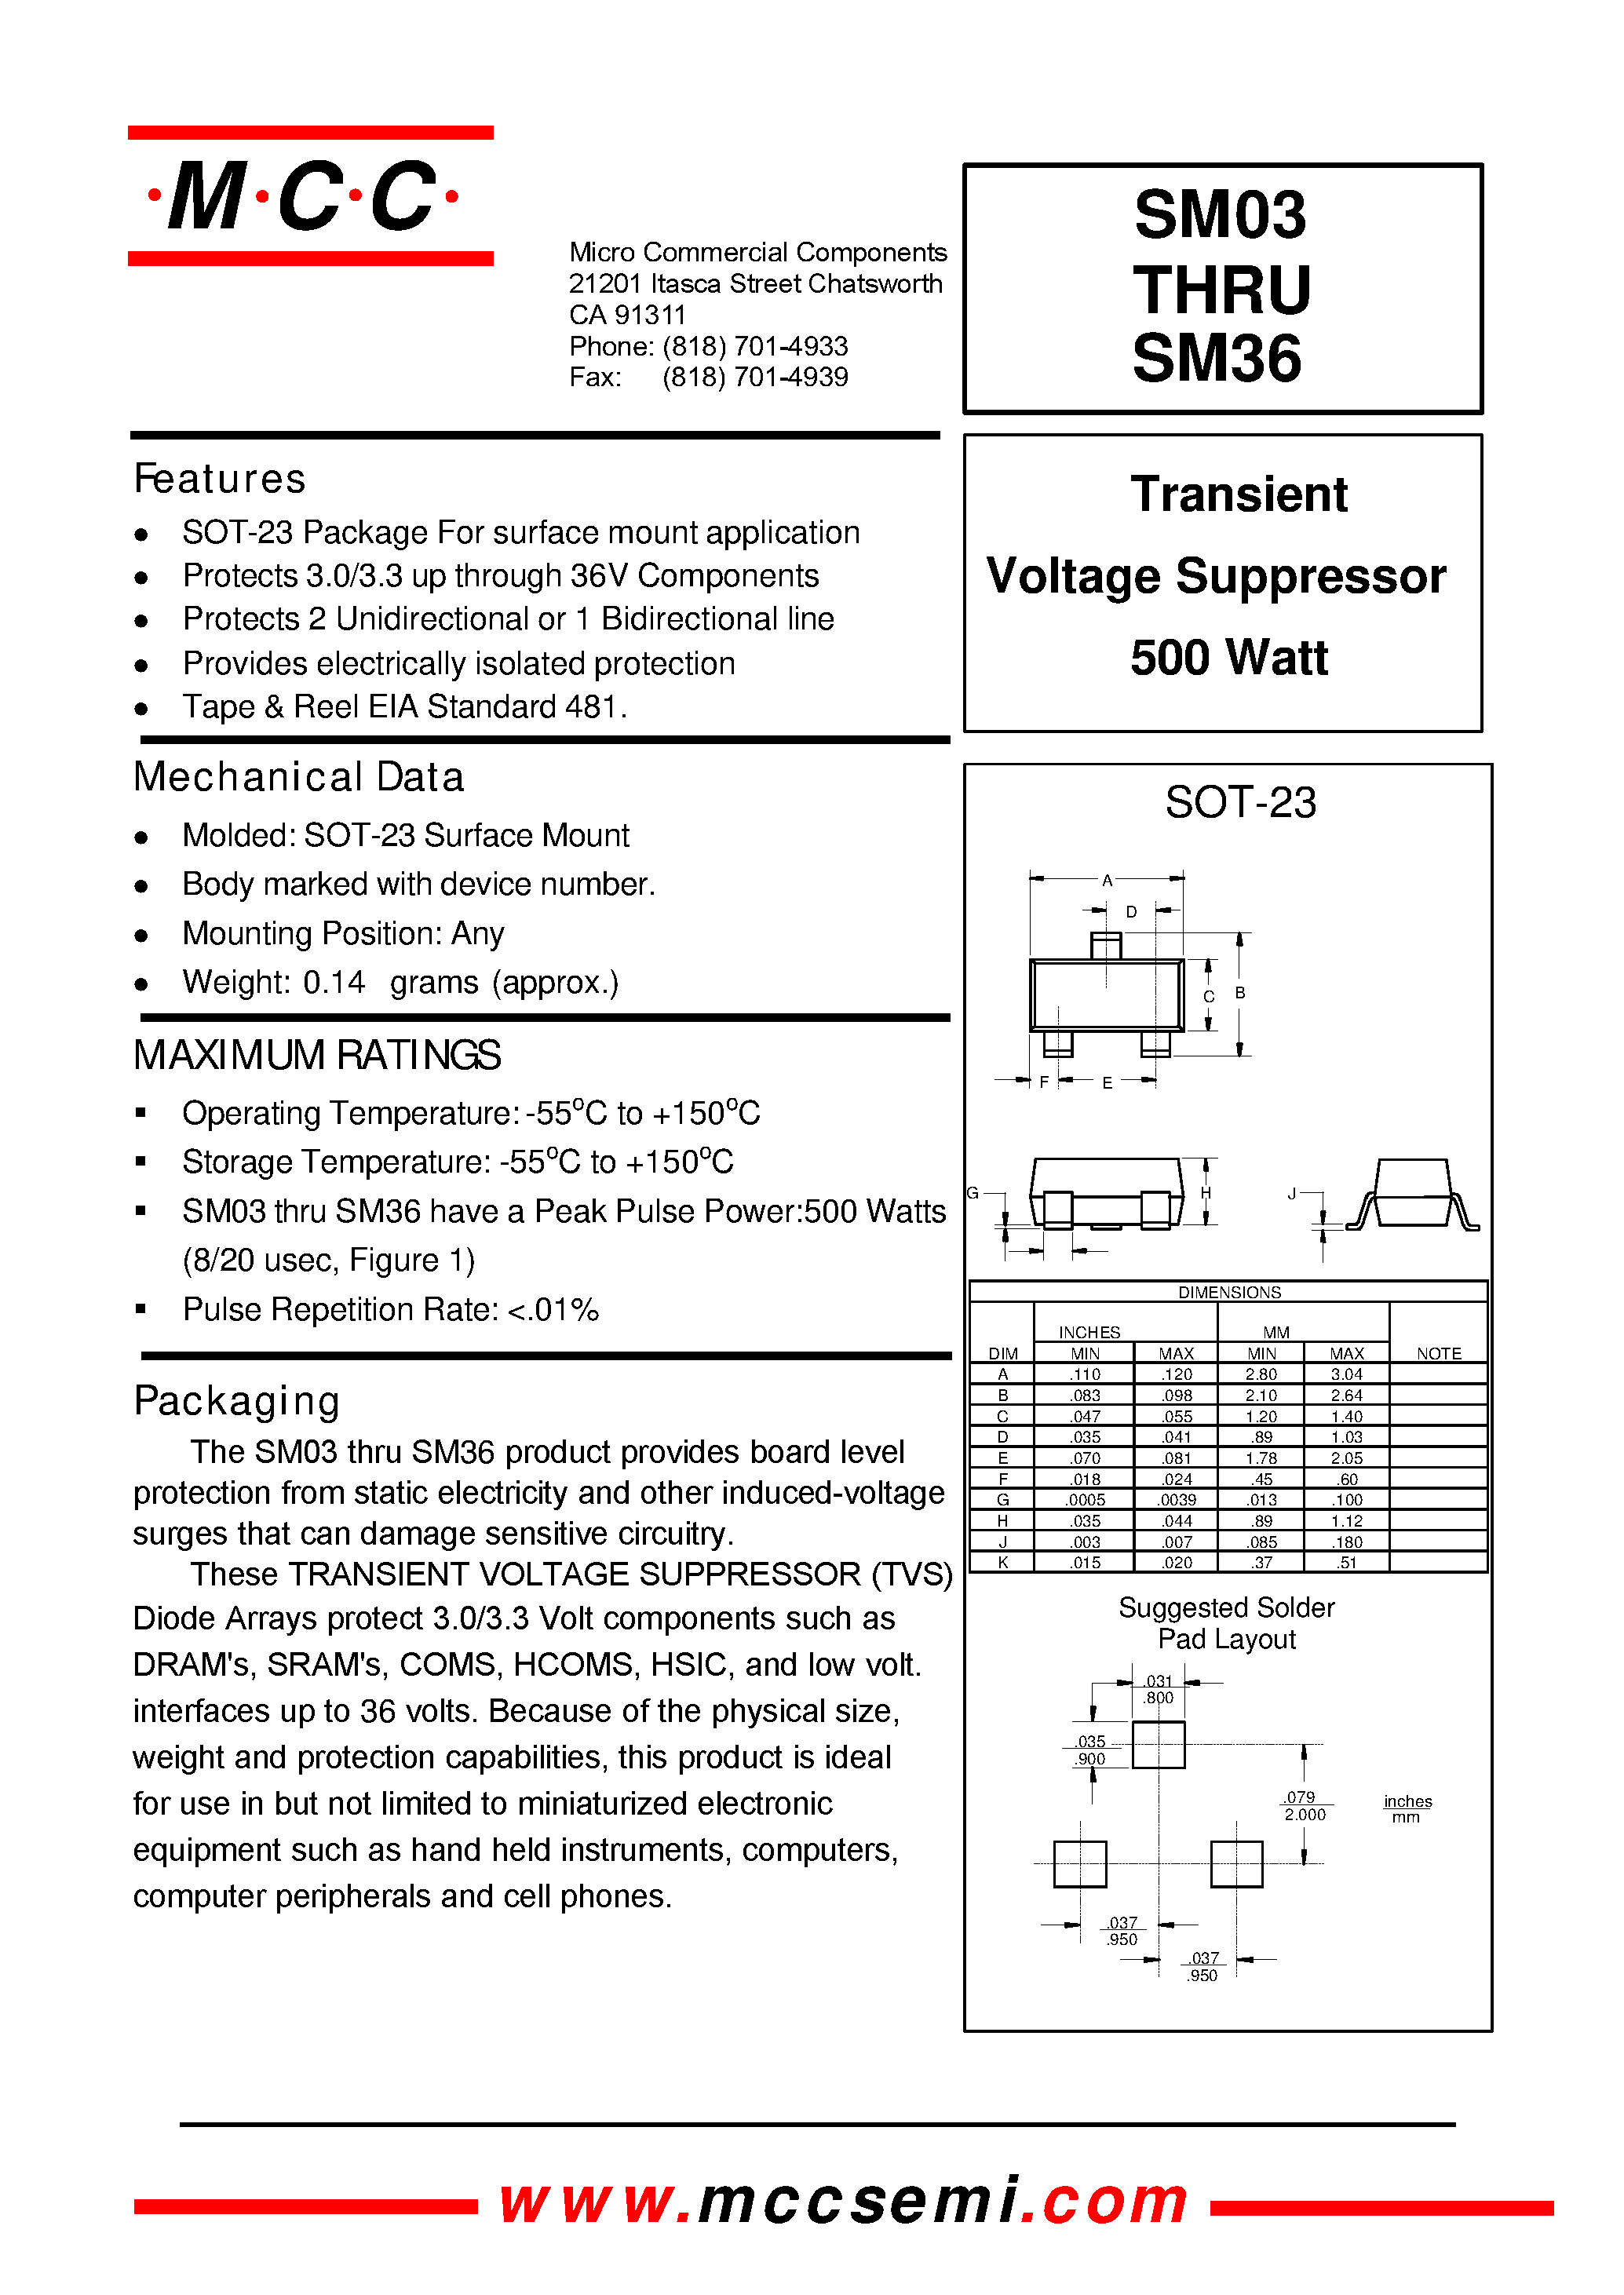 Datasheet SM24 - Transient Voltage Suppressor 500 Watt page 1